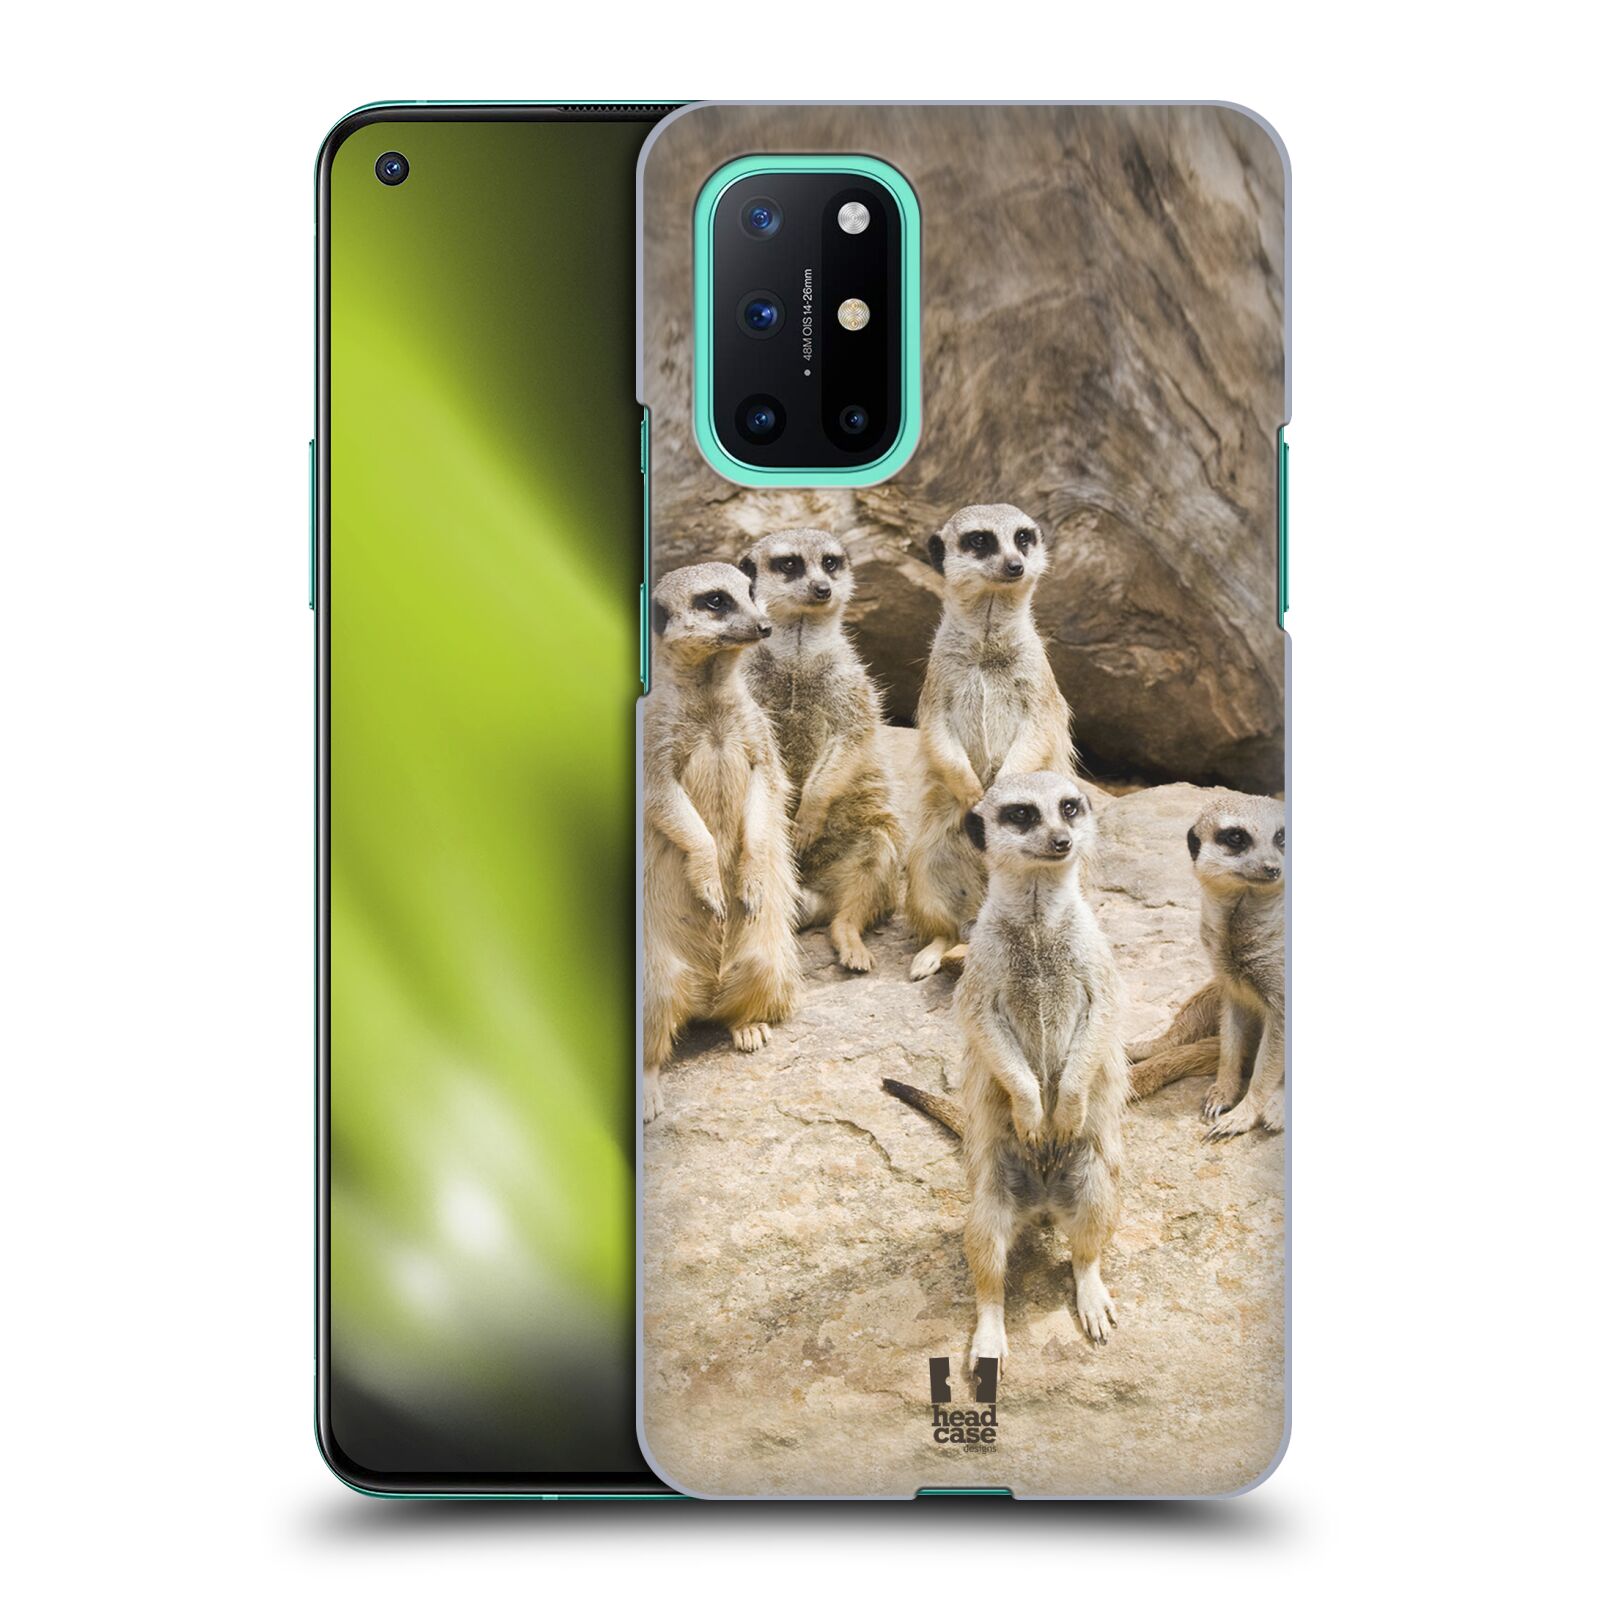 Zadní obal pro mobil OnePlus 8T - HEAD CASE - Svět zvířat roztomilé surikaty